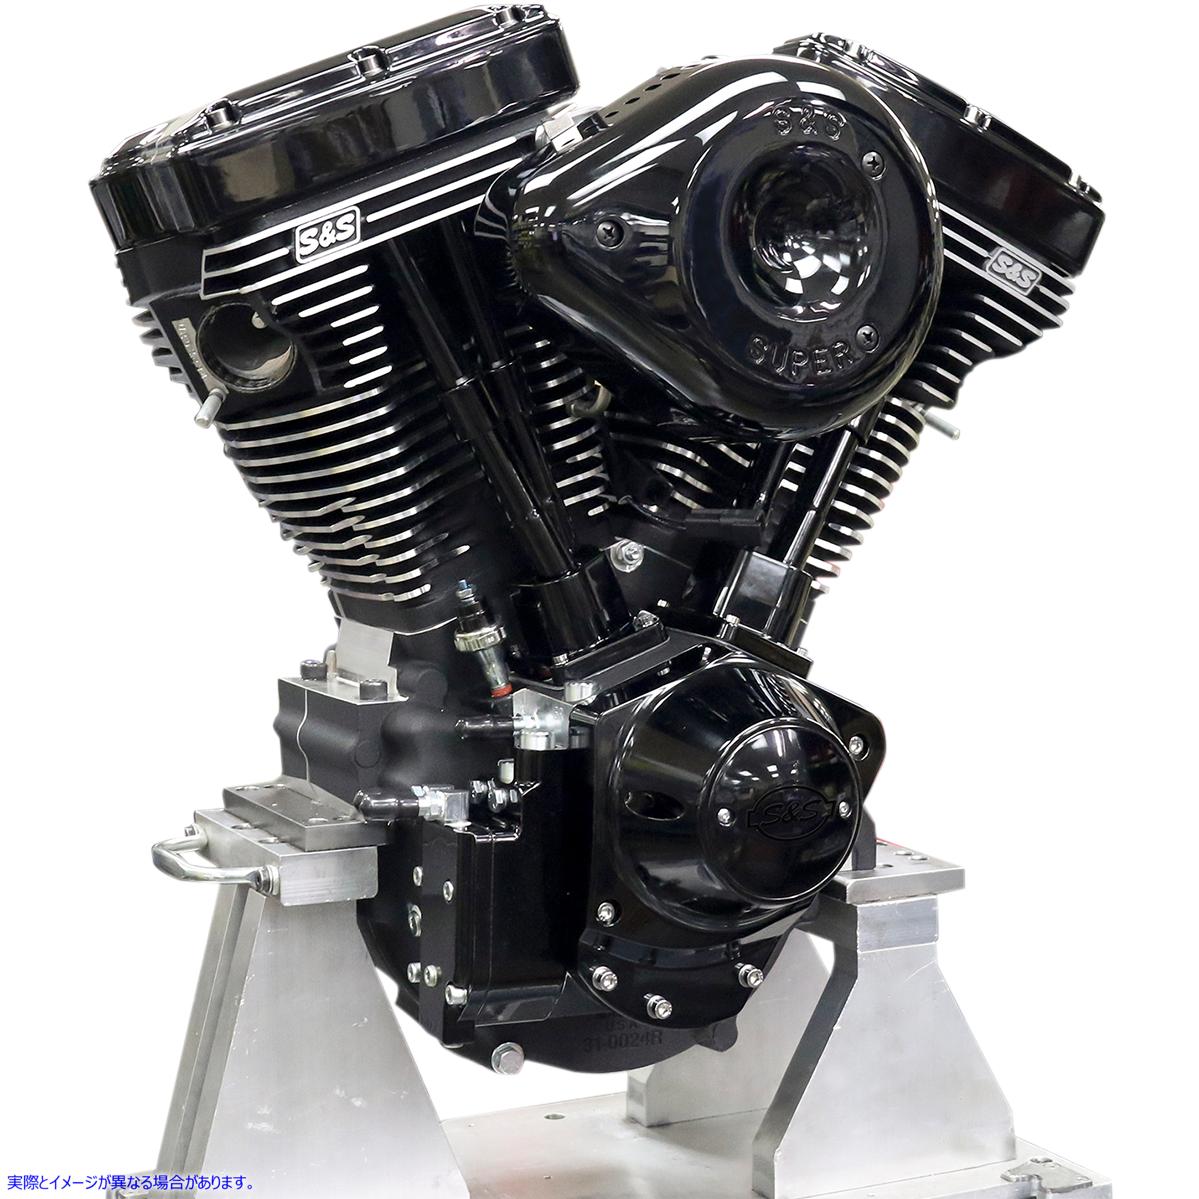 取寄せ V124 Black Editionコンプリート組み立てエンジン エスアンドエス サイクル V124 Series Black Edition Engine 310-0925 09010220